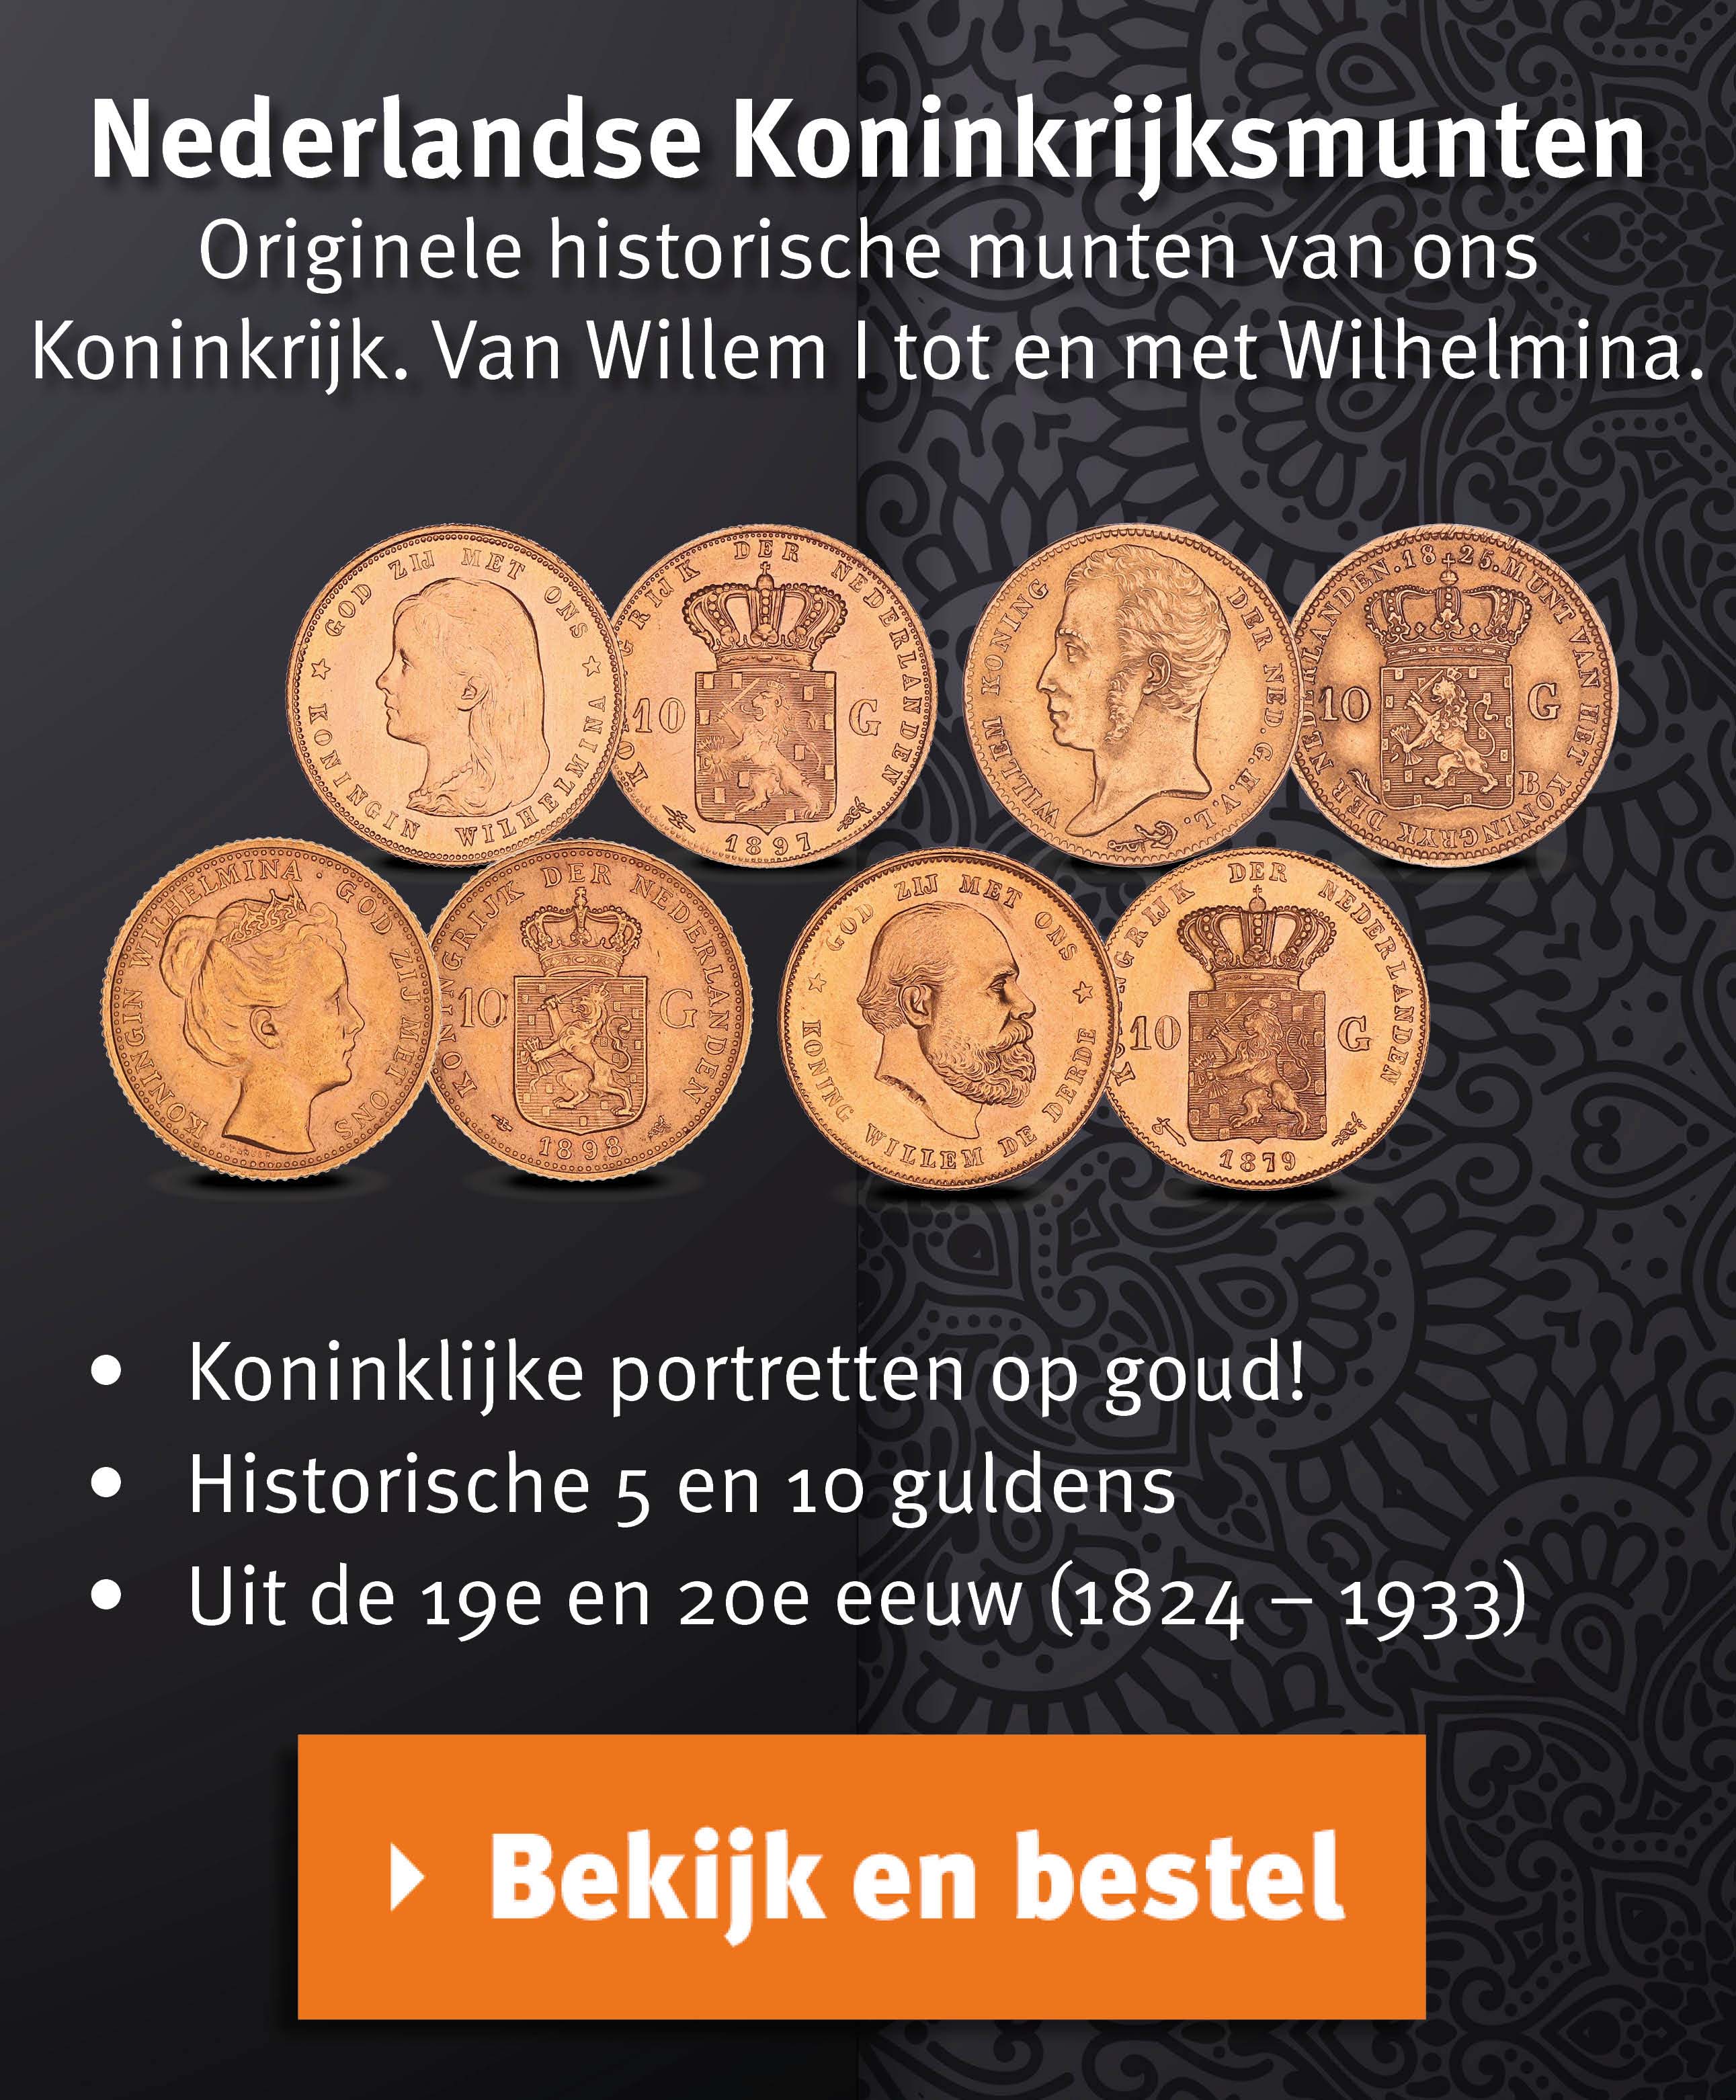 Bekijk en bestel: Nederlandse Koninkrijksmunten